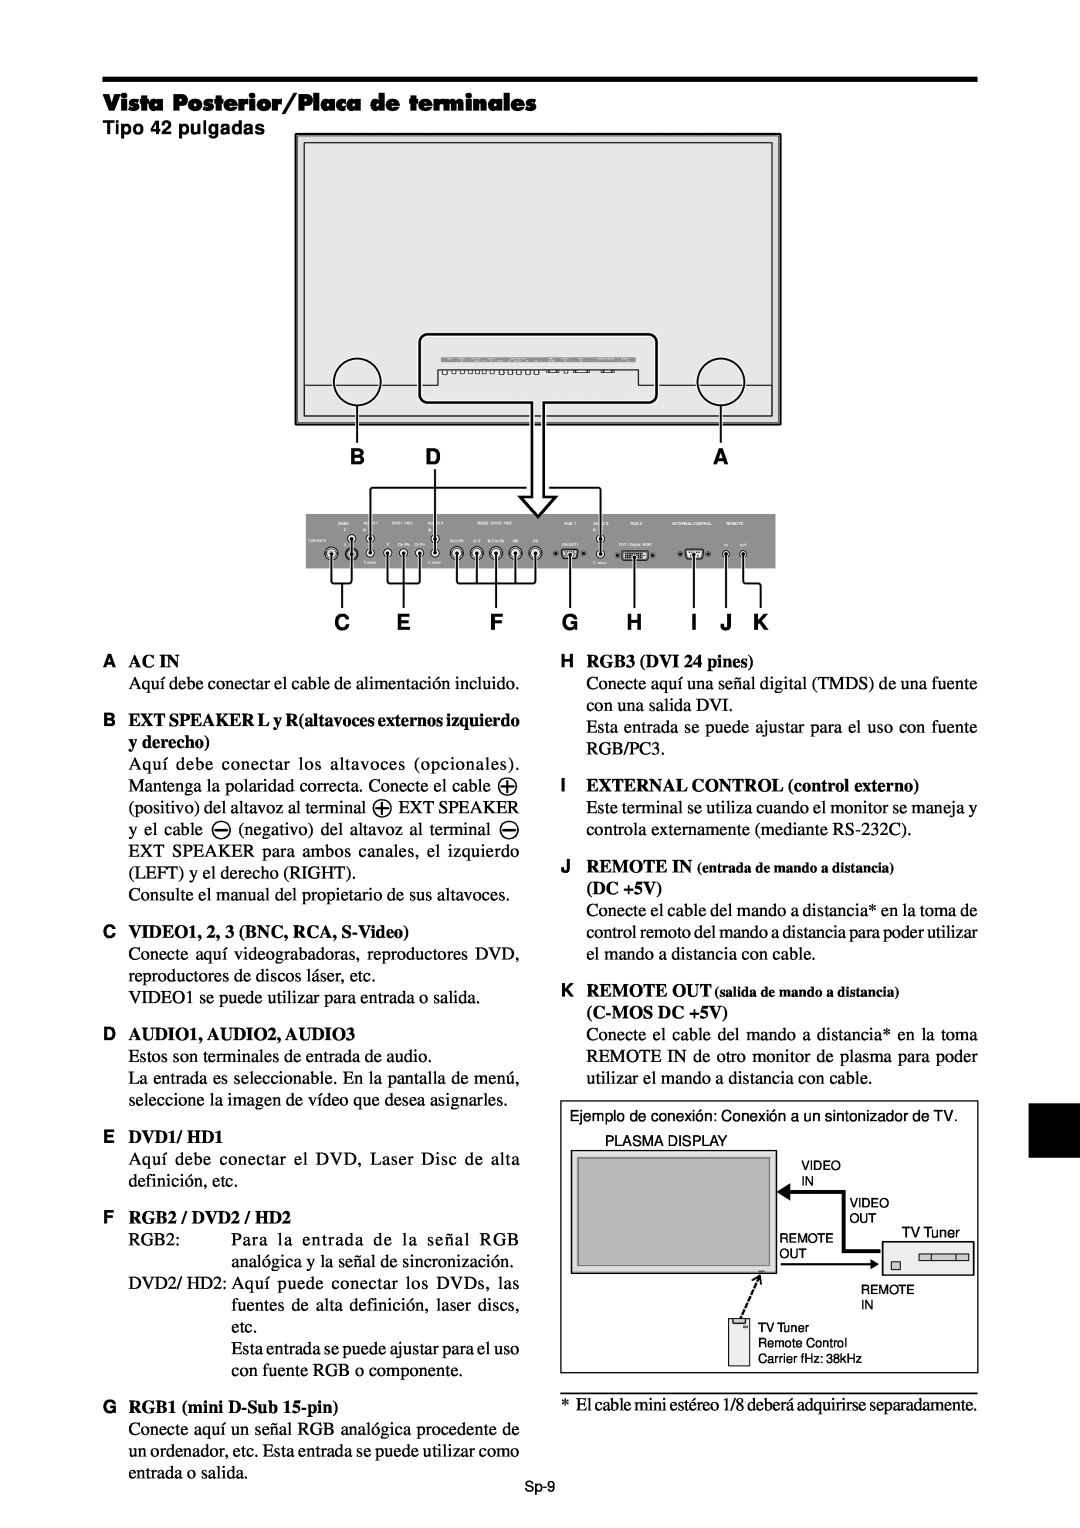 NEC PX-42XM4A, PX-61XM4A manual Vista Posterior/Placa de terminales, C E F, G H I J K, B Da, Tipo 42 pulgadas 